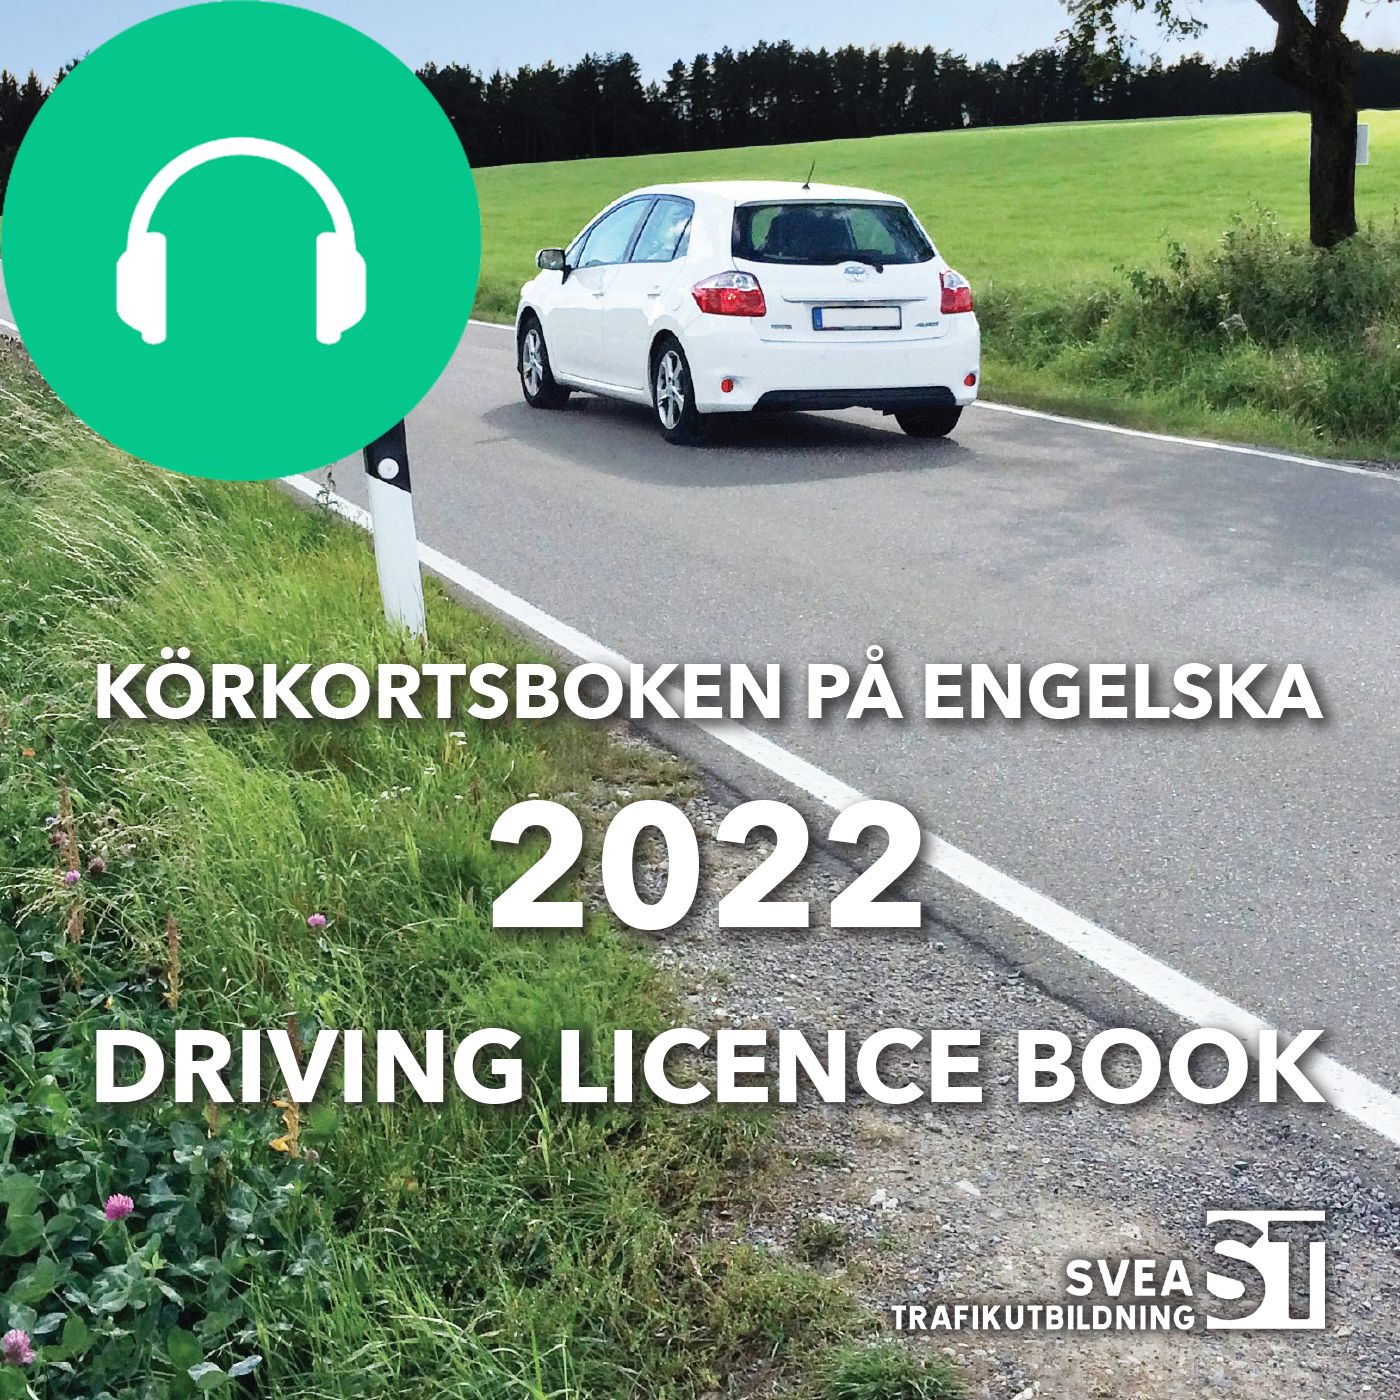 Körkortsboken på engelska 2022: Driving licence book, audiobook by Svea Trafikutbildning